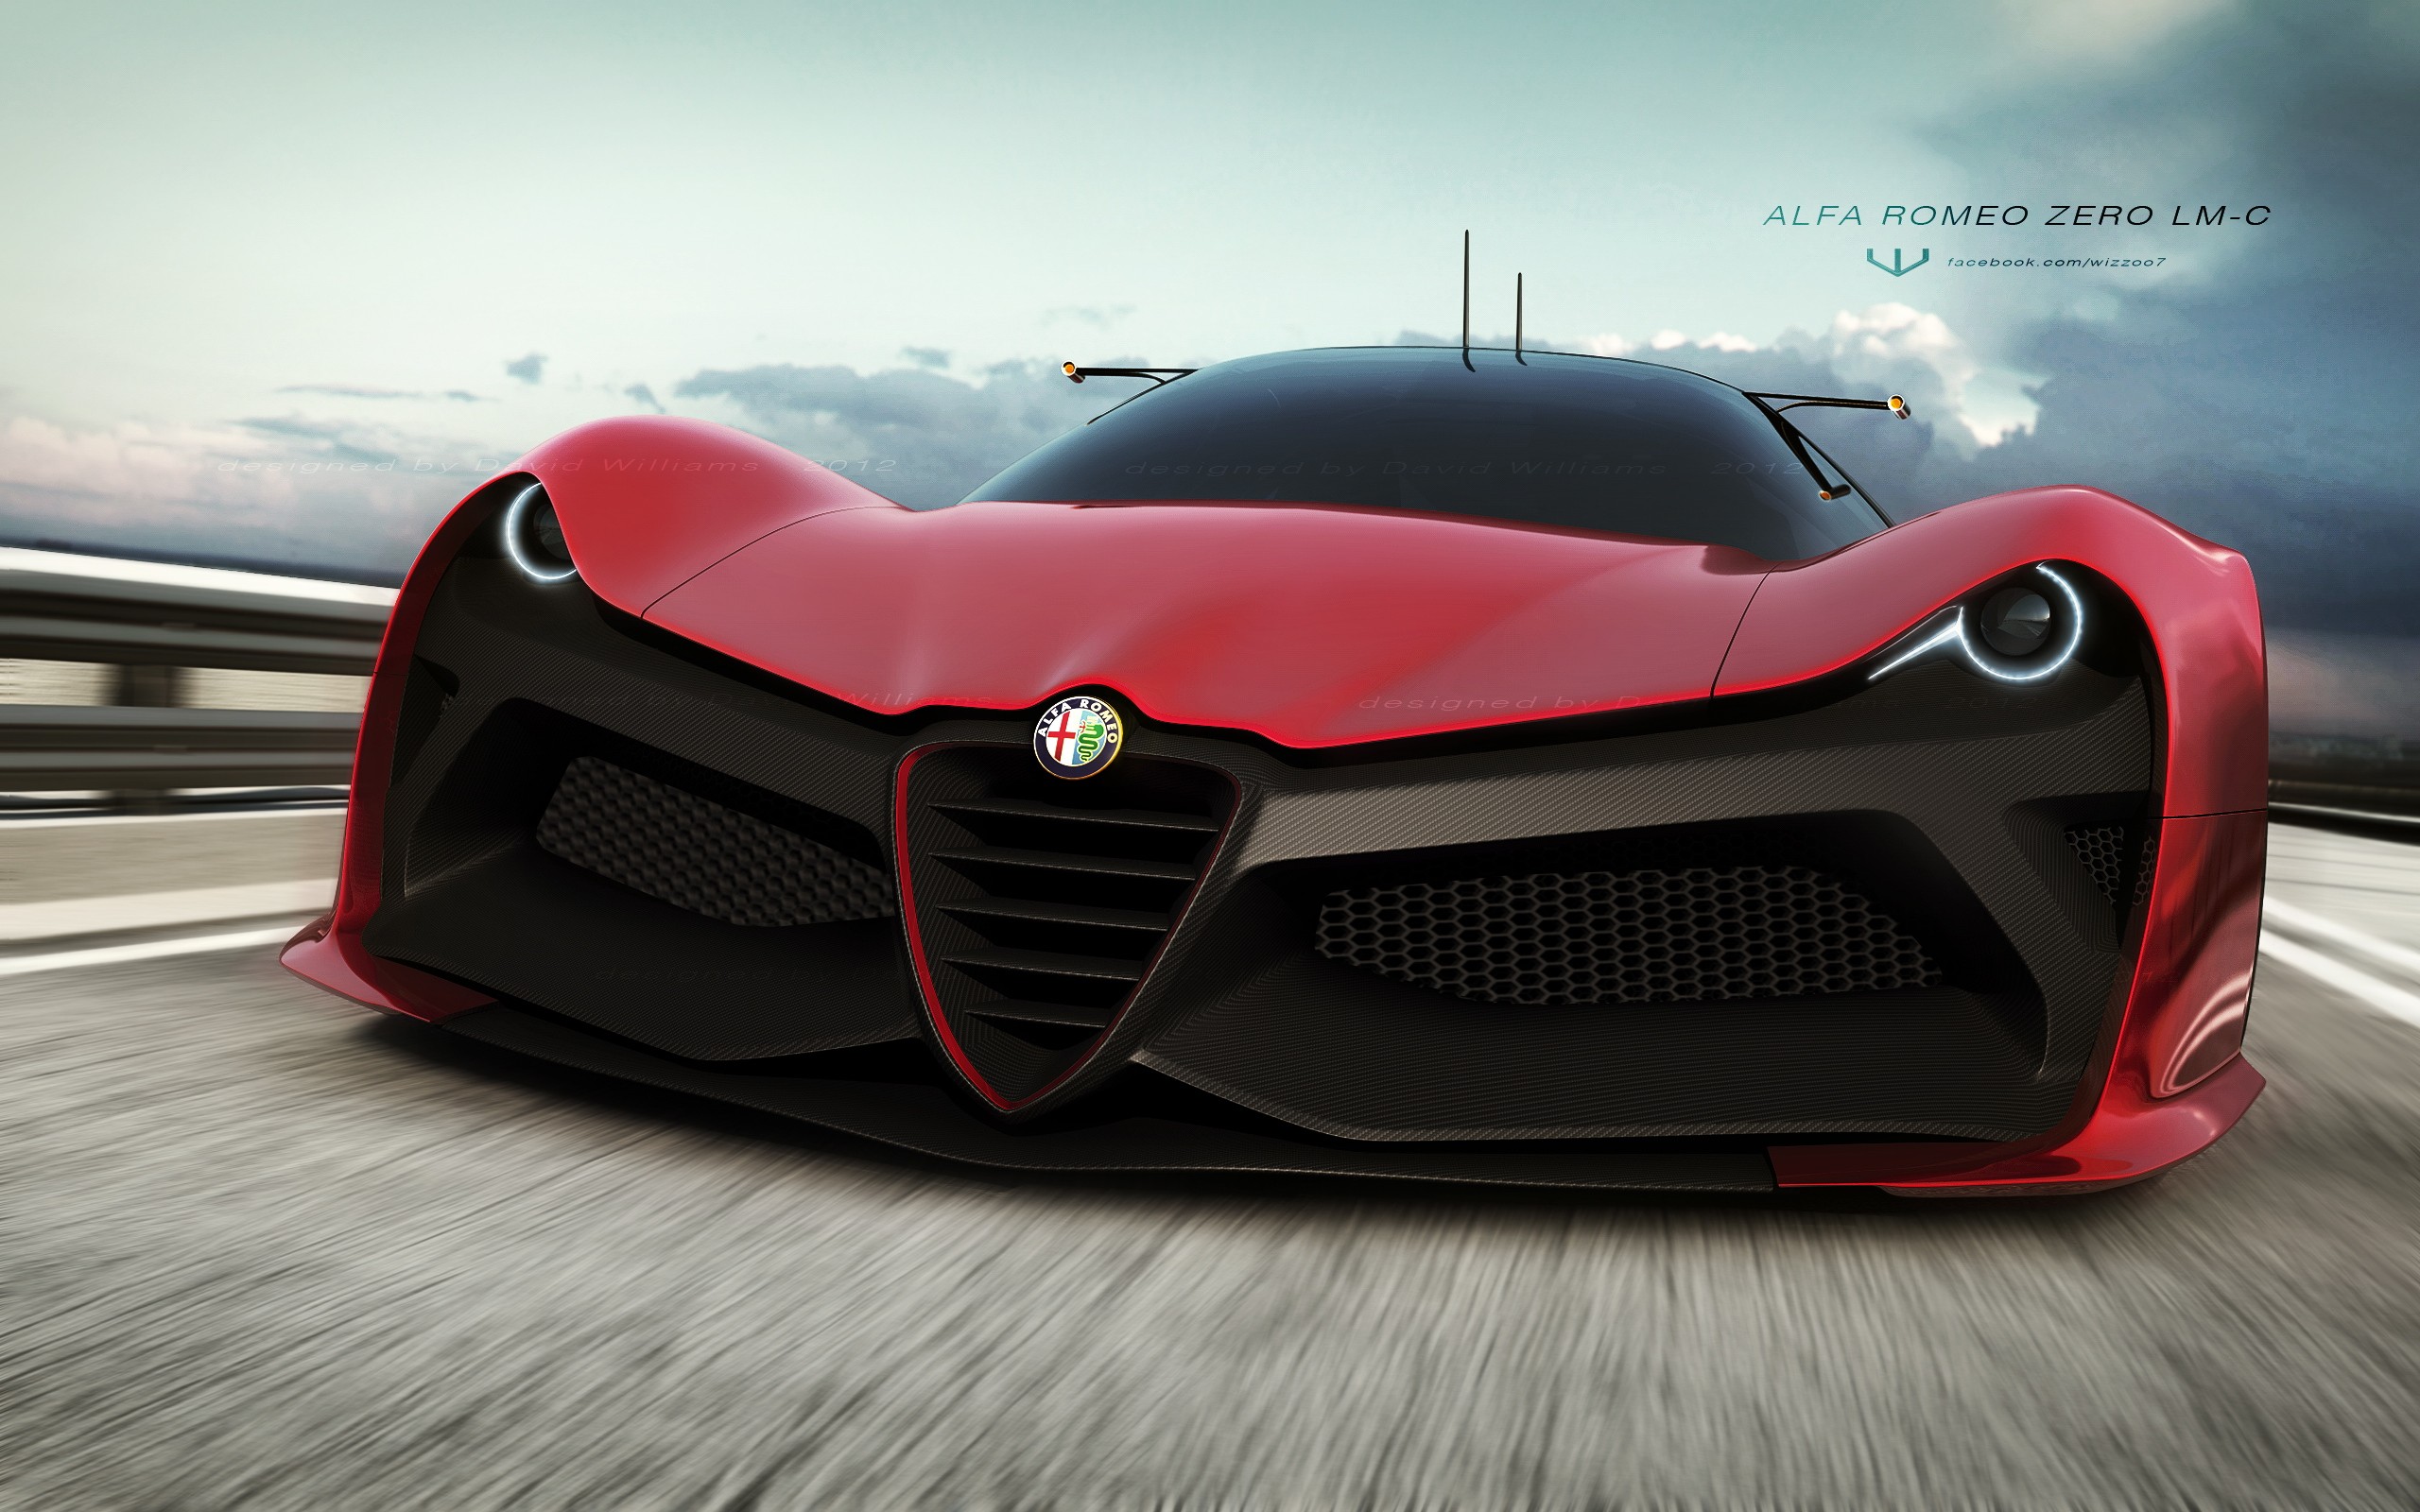 Baixe gratuitamente a imagem Alfa Romeo, Veículos, Alfa Romeo Zero Lm C na área de trabalho do seu PC